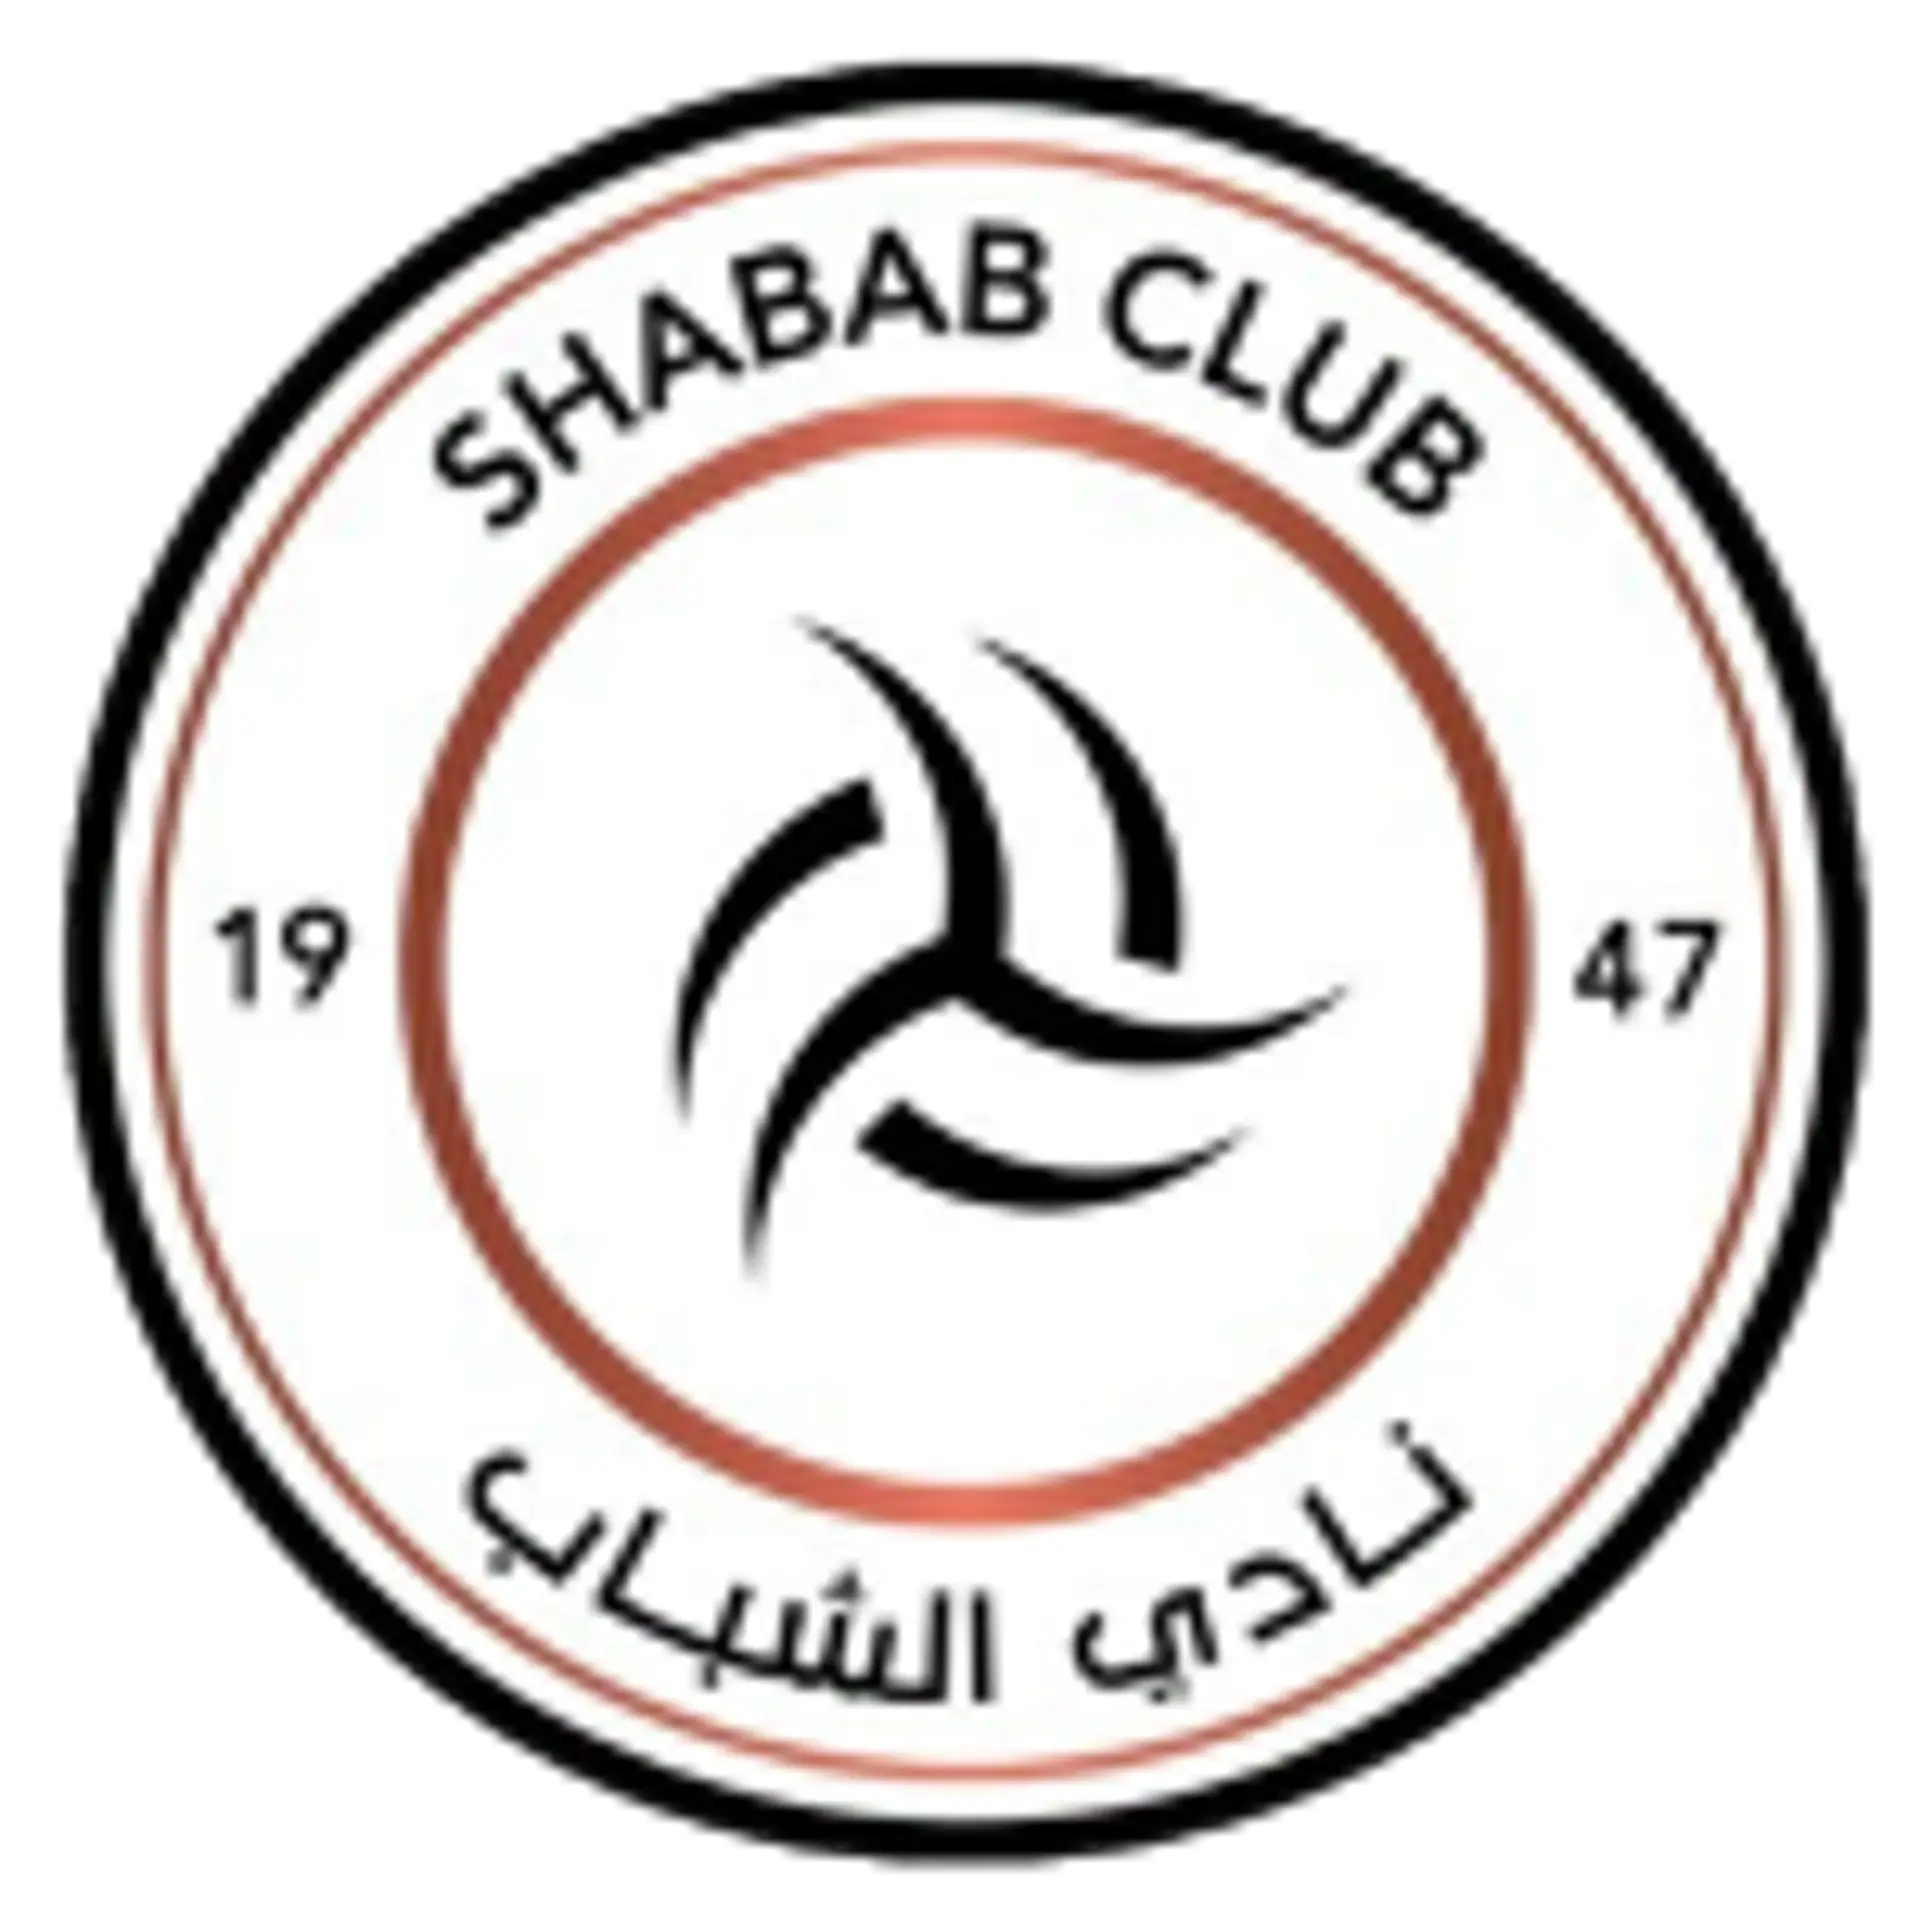 al-Shabab